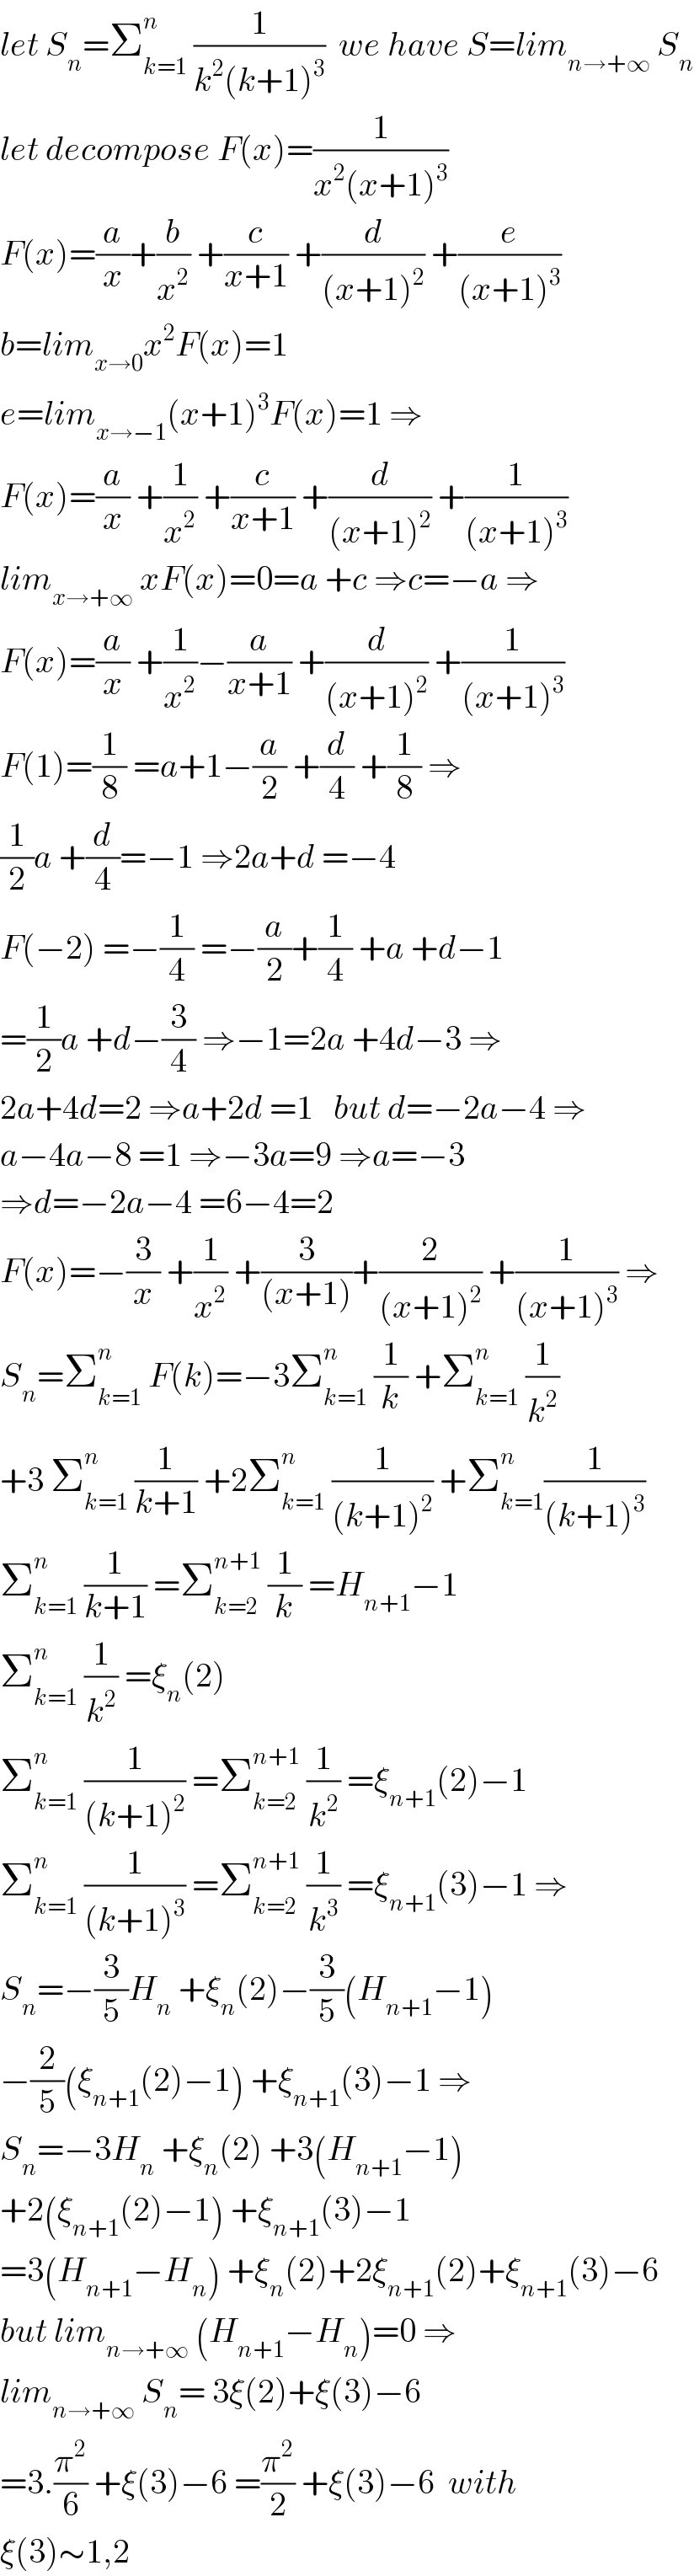 let S_n =Σ_(k=1) ^n  (1/(k^2 (k+1)^3 ))  we have S=lim_(n→+∞)  S_n   let decompose F(x)=(1/(x^2 (x+1)^3 ))  F(x)=(a/x)+(b/x^2 ) +(c/(x+1)) +(d/((x+1)^2 )) +(e/((x+1)^3 ))  b=lim_(x→0) x^2 F(x)=1  e=lim_(x→−1) (x+1)^3 F(x)=1 ⇒  F(x)=(a/x) +(1/x^2 ) +(c/(x+1)) +(d/((x+1)^2 )) +(1/((x+1)^3 ))  lim_(x→+∞)  xF(x)=0=a +c ⇒c=−a ⇒  F(x)=(a/x) +(1/x^2 )−(a/(x+1)) +(d/((x+1)^2 )) +(1/((x+1)^3 ))  F(1)=(1/8) =a+1−(a/2) +(d/4) +(1/8) ⇒  (1/2)a +(d/4)=−1 ⇒2a+d =−4  F(−2) =−(1/4) =−(a/2)+(1/4) +a +d−1  =(1/2)a +d−(3/4) ⇒−1=2a +4d−3 ⇒  2a+4d=2 ⇒a+2d =1   but d=−2a−4 ⇒  a−4a−8 =1 ⇒−3a=9 ⇒a=−3  ⇒d=−2a−4 =6−4=2  F(x)=−(3/x) +(1/x^2 ) +(3/((x+1)))+(2/((x+1)^2 )) +(1/((x+1)^3 )) ⇒  S_n =Σ_(k=1) ^n  F(k)=−3Σ_(k=1) ^n  (1/k) +Σ_(k=1) ^n  (1/k^2 )  +3 Σ_(k=1) ^n  (1/(k+1)) +2Σ_(k=1) ^n  (1/((k+1)^2 )) +Σ_(k=1) ^n (1/((k+1)^3 ))   Σ_(k=1) ^n  (1/(k+1)) =Σ_(k=2) ^(n+1)  (1/k) =H_(n+1) −1  Σ_(k=1) ^n  (1/k^2 ) =ξ_n (2)  Σ_(k=1) ^n  (1/((k+1)^2 )) =Σ_(k=2) ^(n+1)  (1/k^2 ) =ξ_(n+1) (2)−1  Σ_(k=1) ^n  (1/((k+1)^3 )) =Σ_(k=2) ^(n+1)  (1/k^3 ) =ξ_(n+1) (3)−1 ⇒  S_n =−(3/5)H_n  +ξ_n (2)−(3/5)(H_(n+1) −1)  −(2/5)(ξ_(n+1) (2)−1) +ξ_(n+1) (3)−1 ⇒  S_n =−3H_n  +ξ_n (2) +3(H_(n+1) −1)  +2(ξ_(n+1) (2)−1) +ξ_(n+1) (3)−1  =3(H_(n+1) −H_n ) +ξ_n (2)+2ξ_(n+1) (2)+ξ_(n+1) (3)−6  but lim_(n→+∞)  (H_(n+1) −H_n )=0 ⇒  lim_(n→+∞)  S_n = 3ξ(2)+ξ(3)−6  =3.(π^2 /6) +ξ(3)−6 =(π^2 /2) +ξ(3)−6  with  ξ(3)∼1,2  